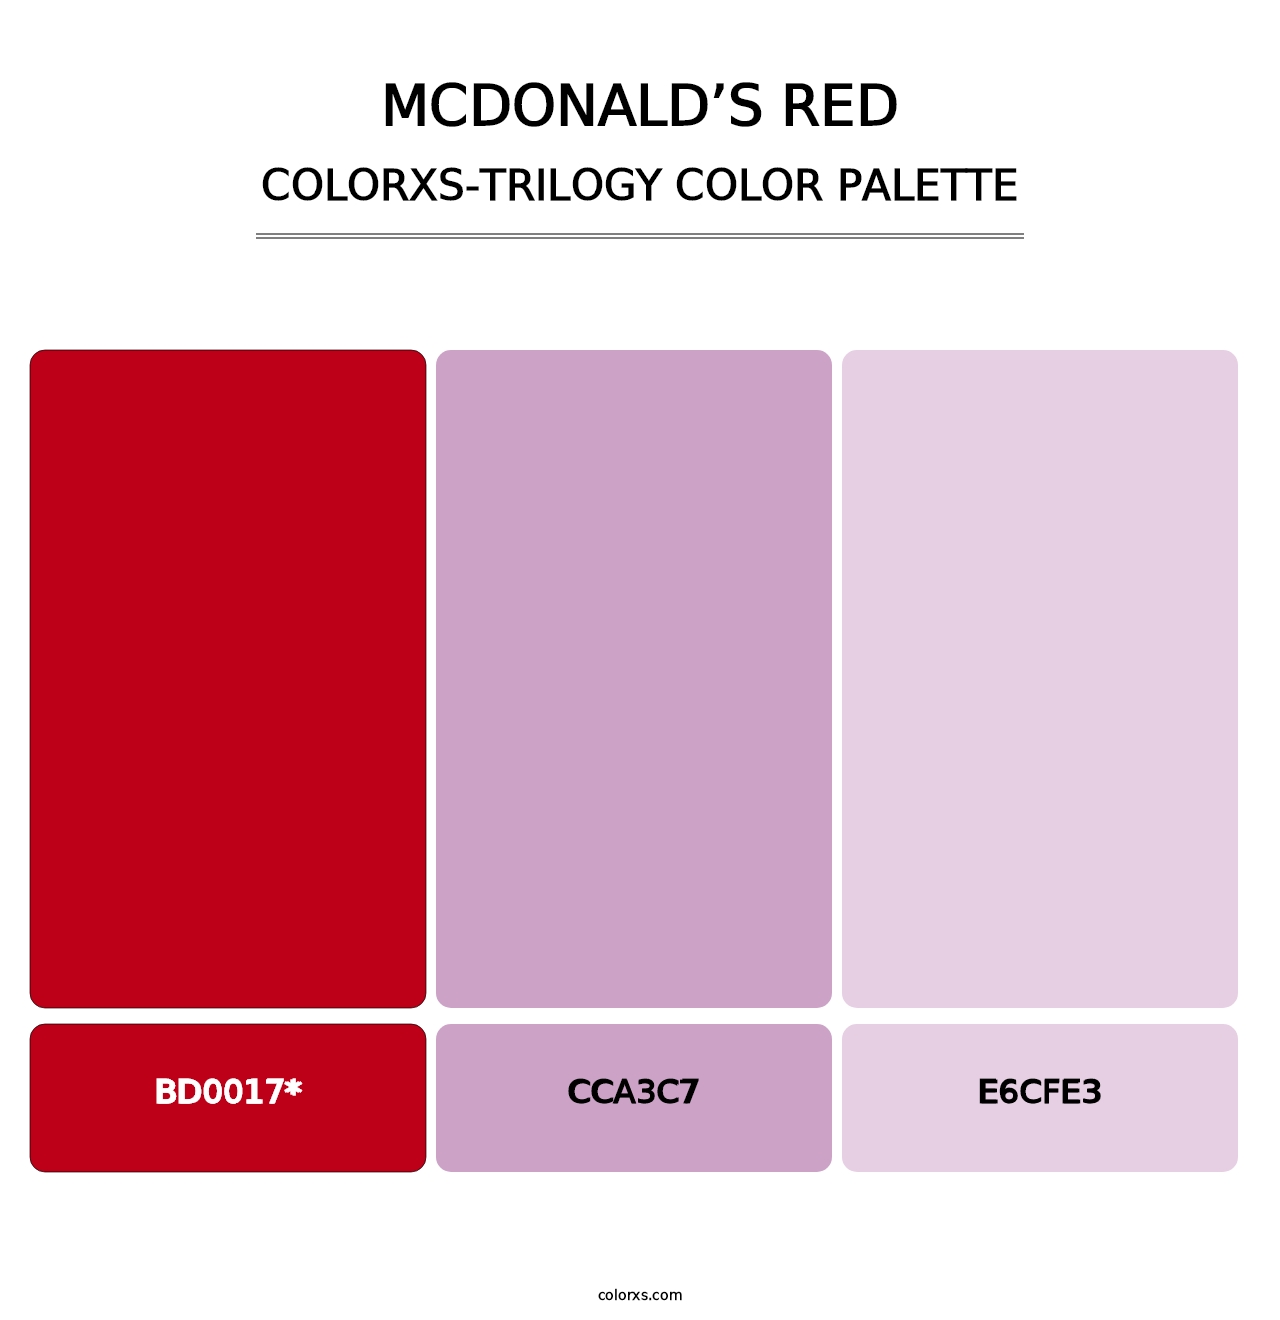 McDonald’s Red - Colorxs Trilogy Palette